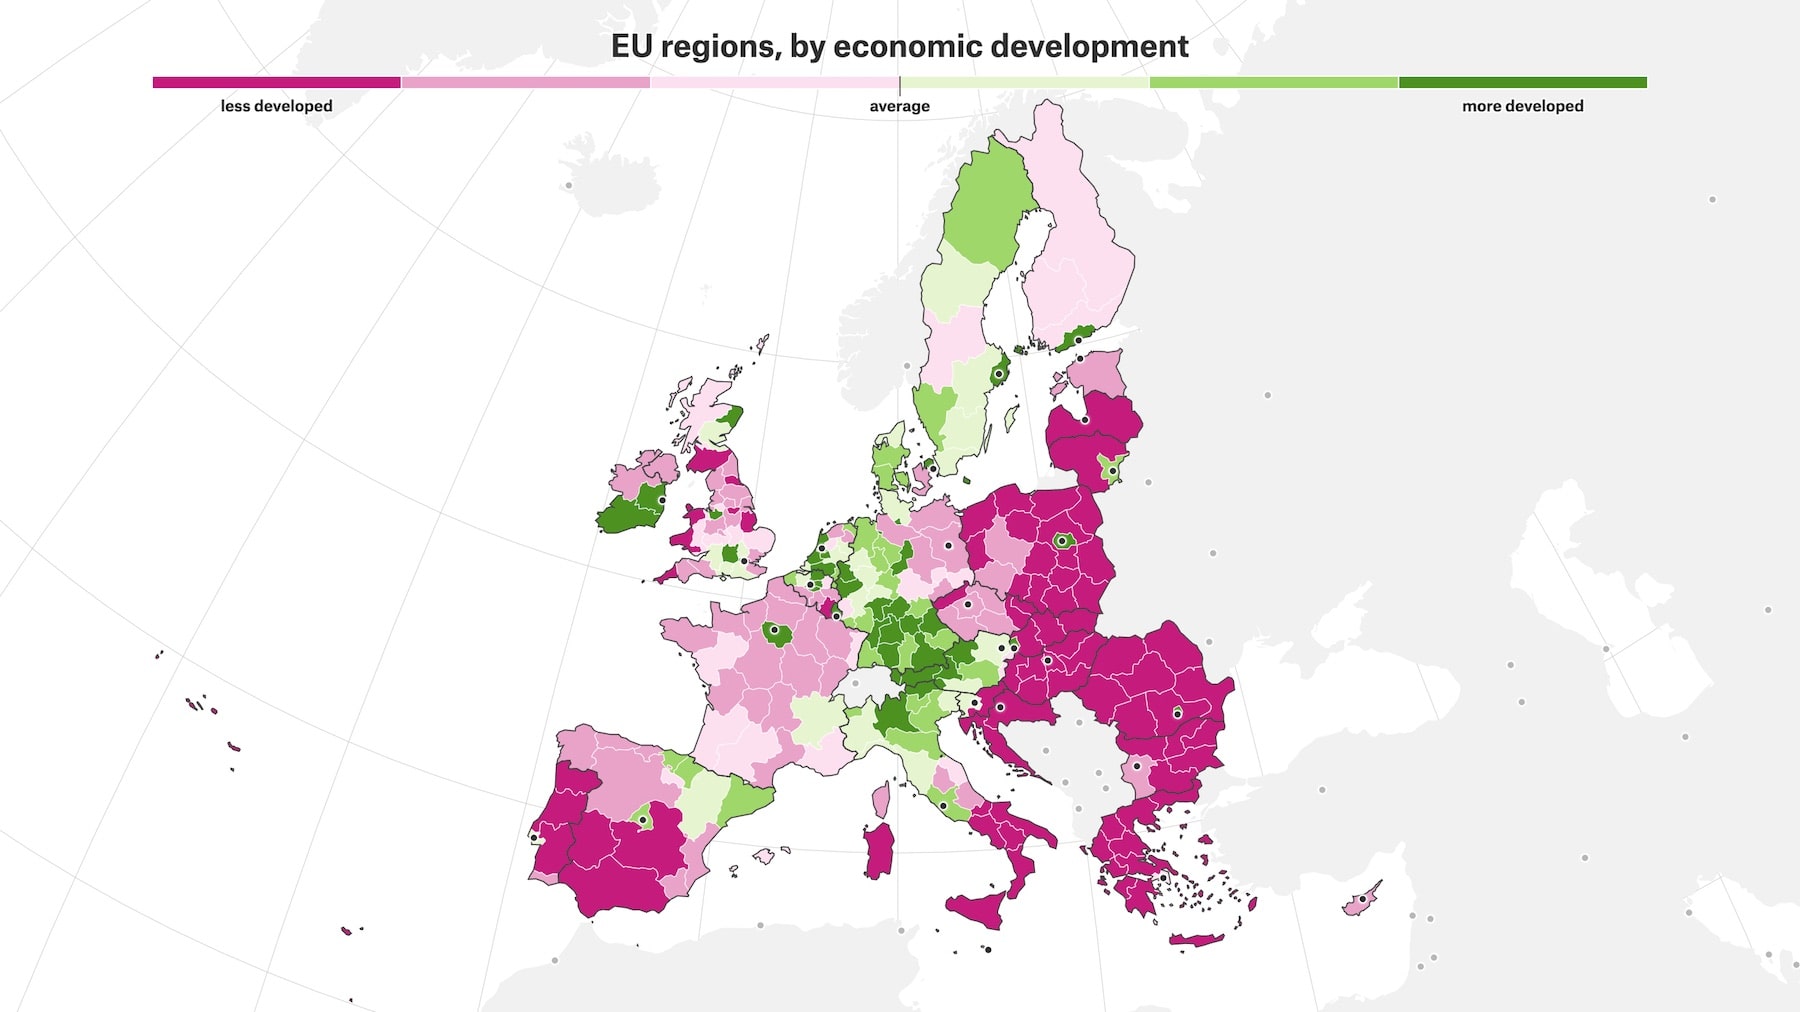 Représentation des régions de l'UE, classées par développement économique